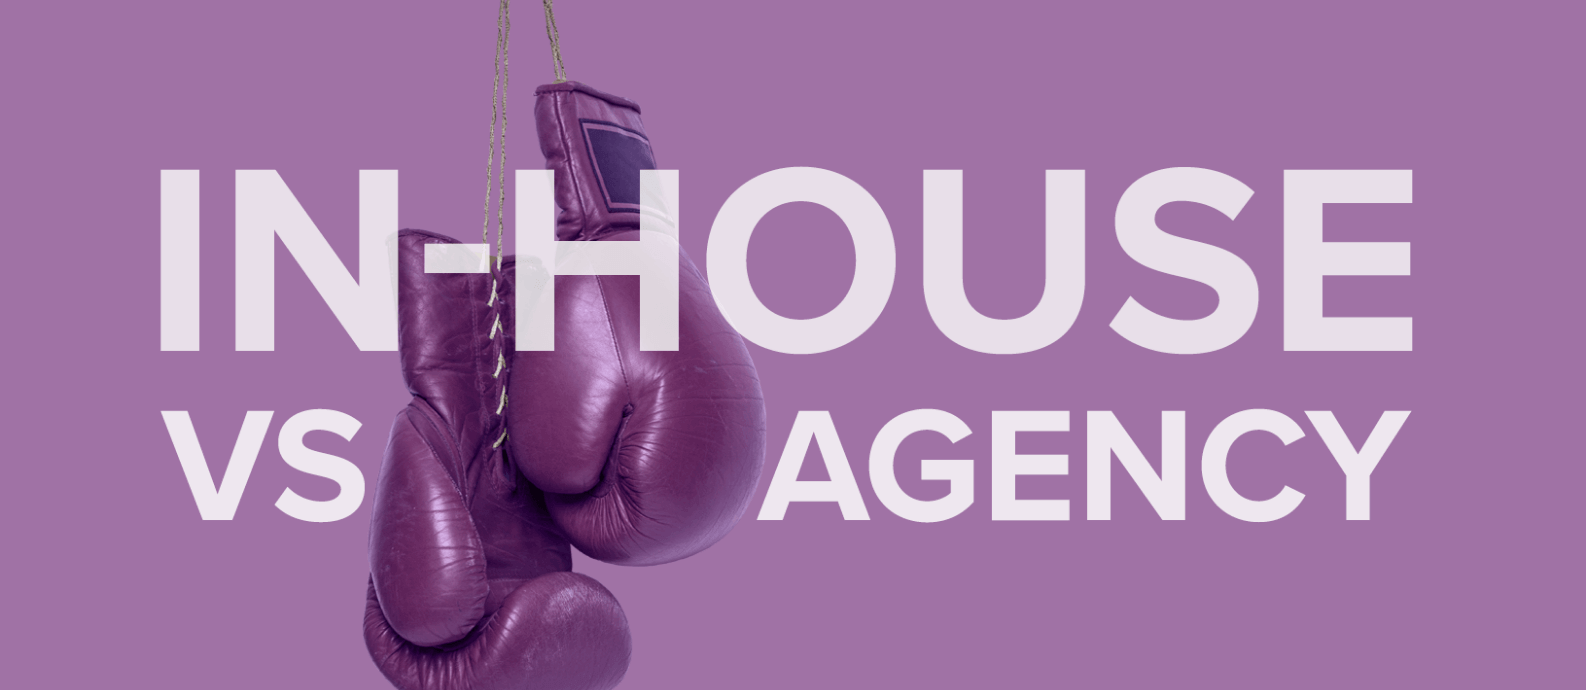 In house vs agency